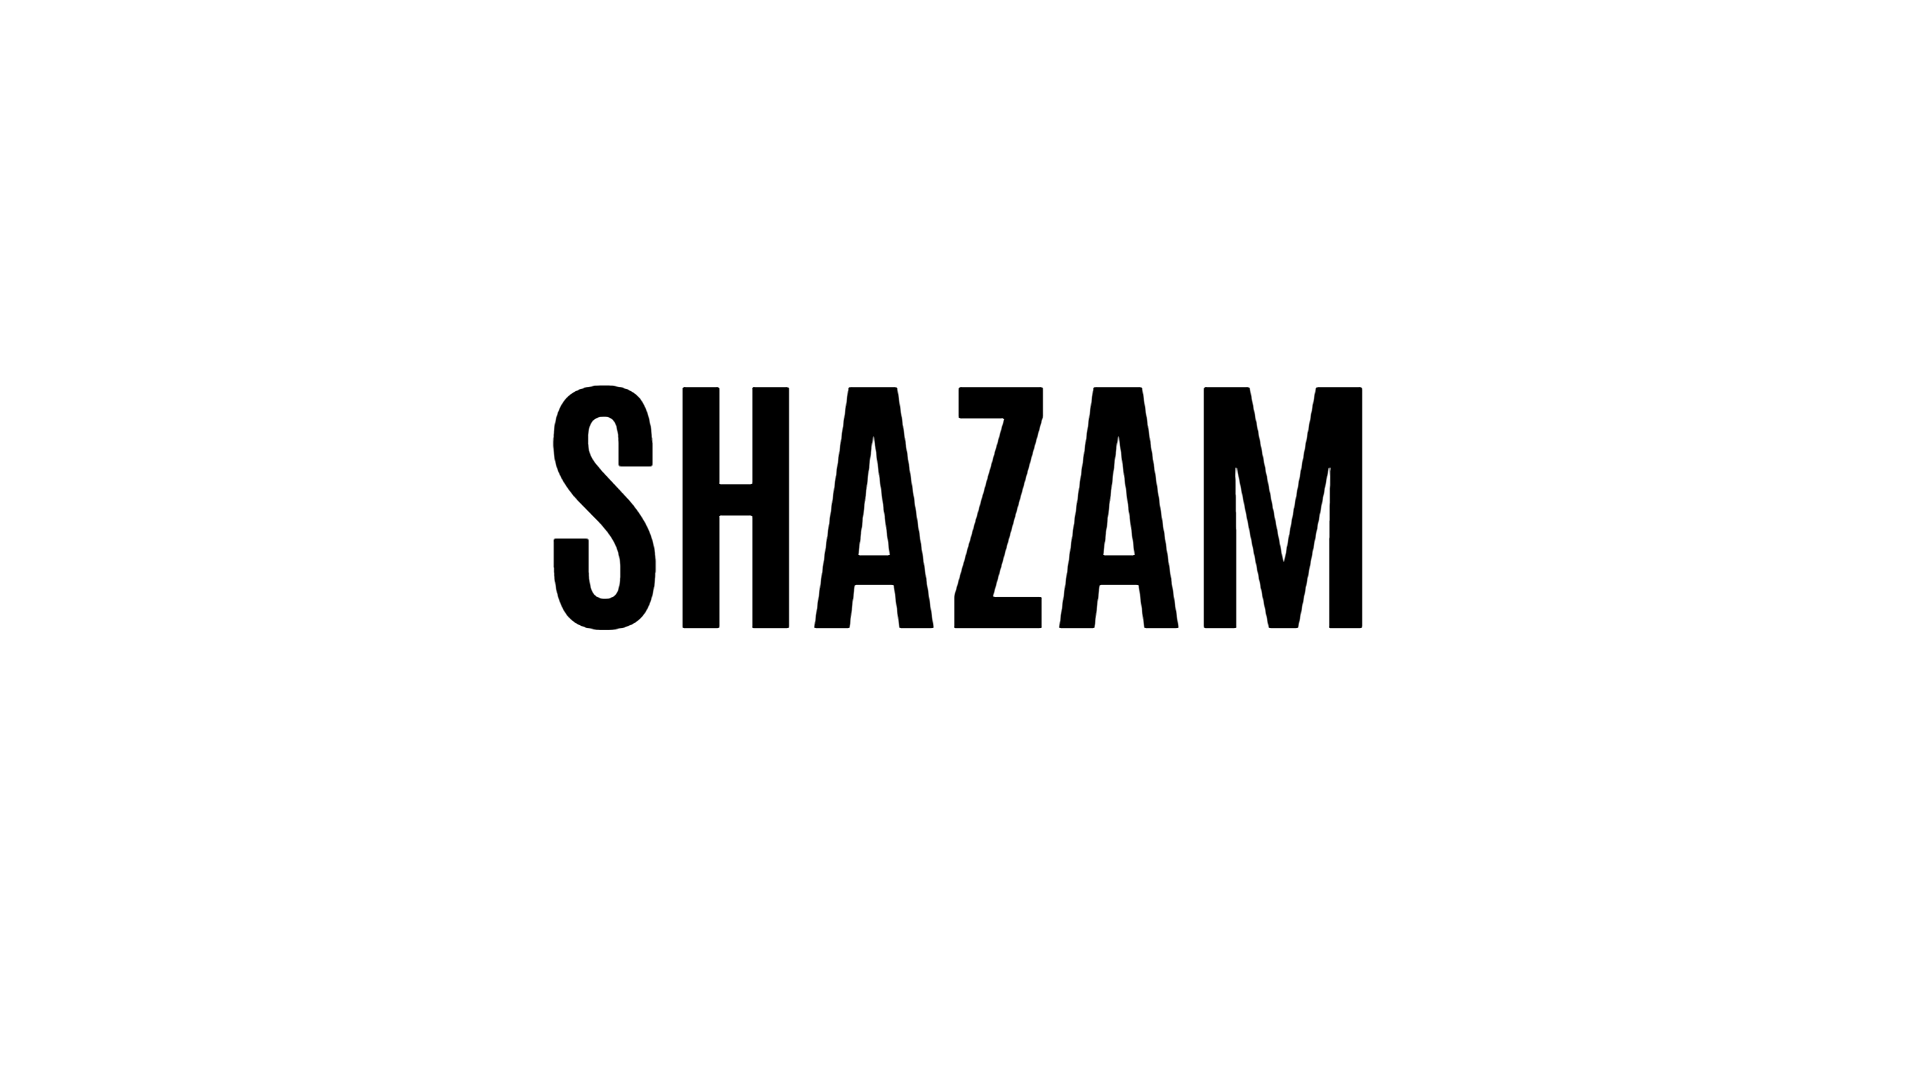 SHAZAM